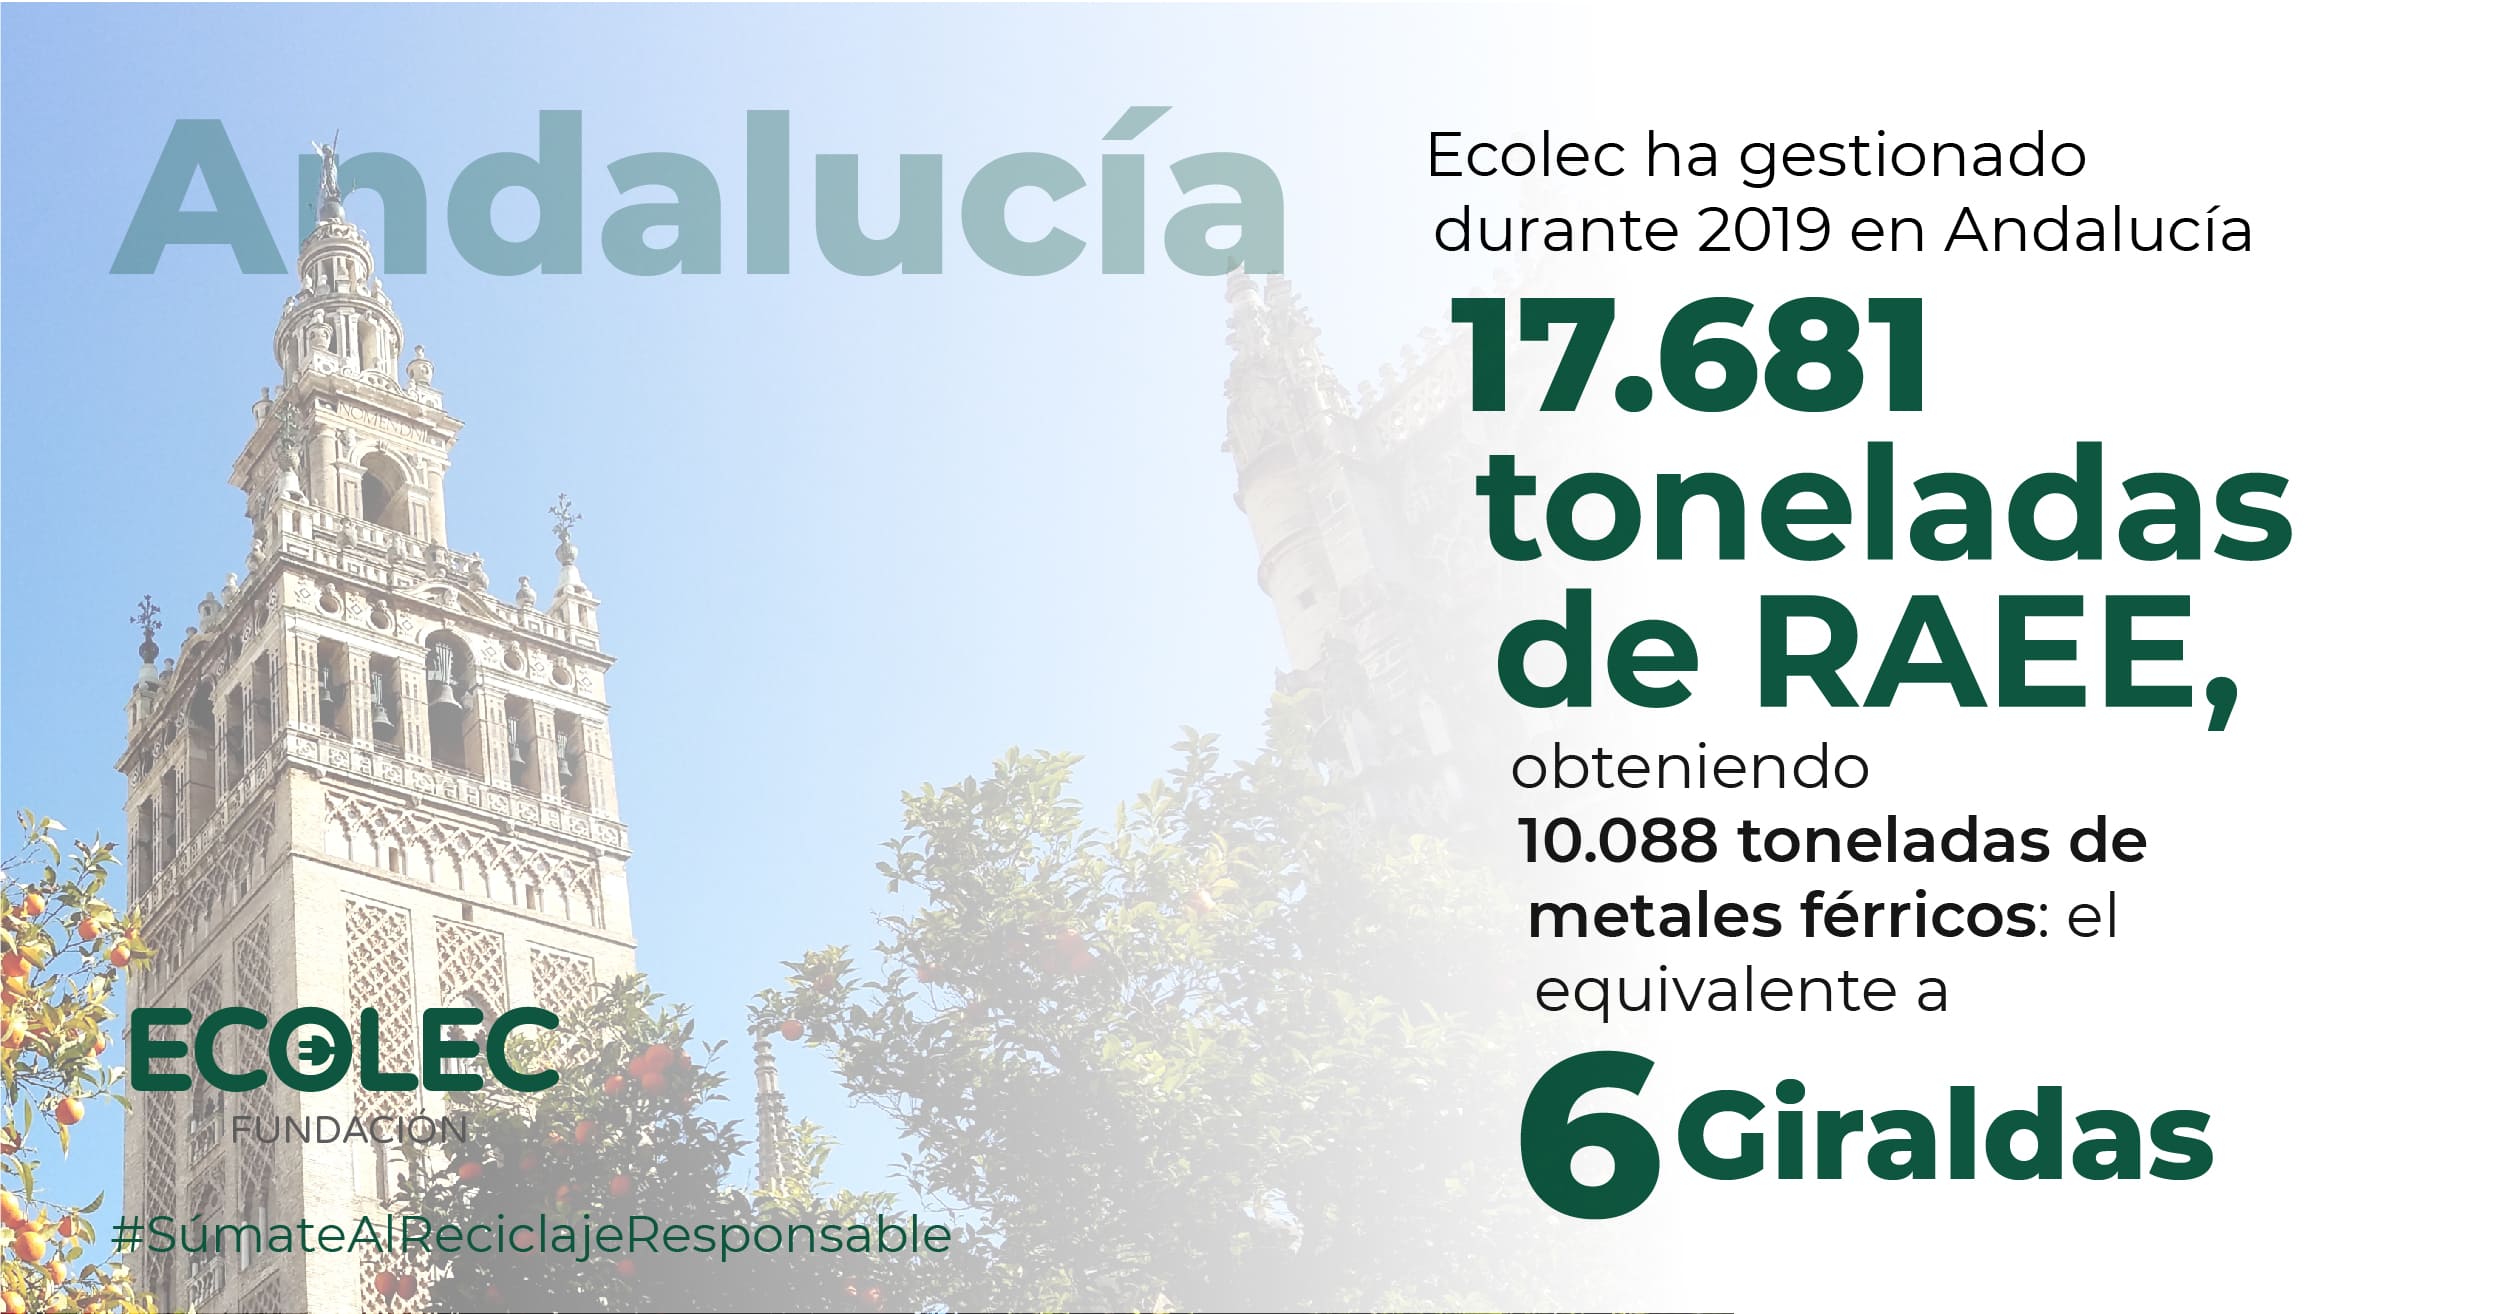 ECOLEC gestiona en Andalucía el equivalente a 6 giraldas